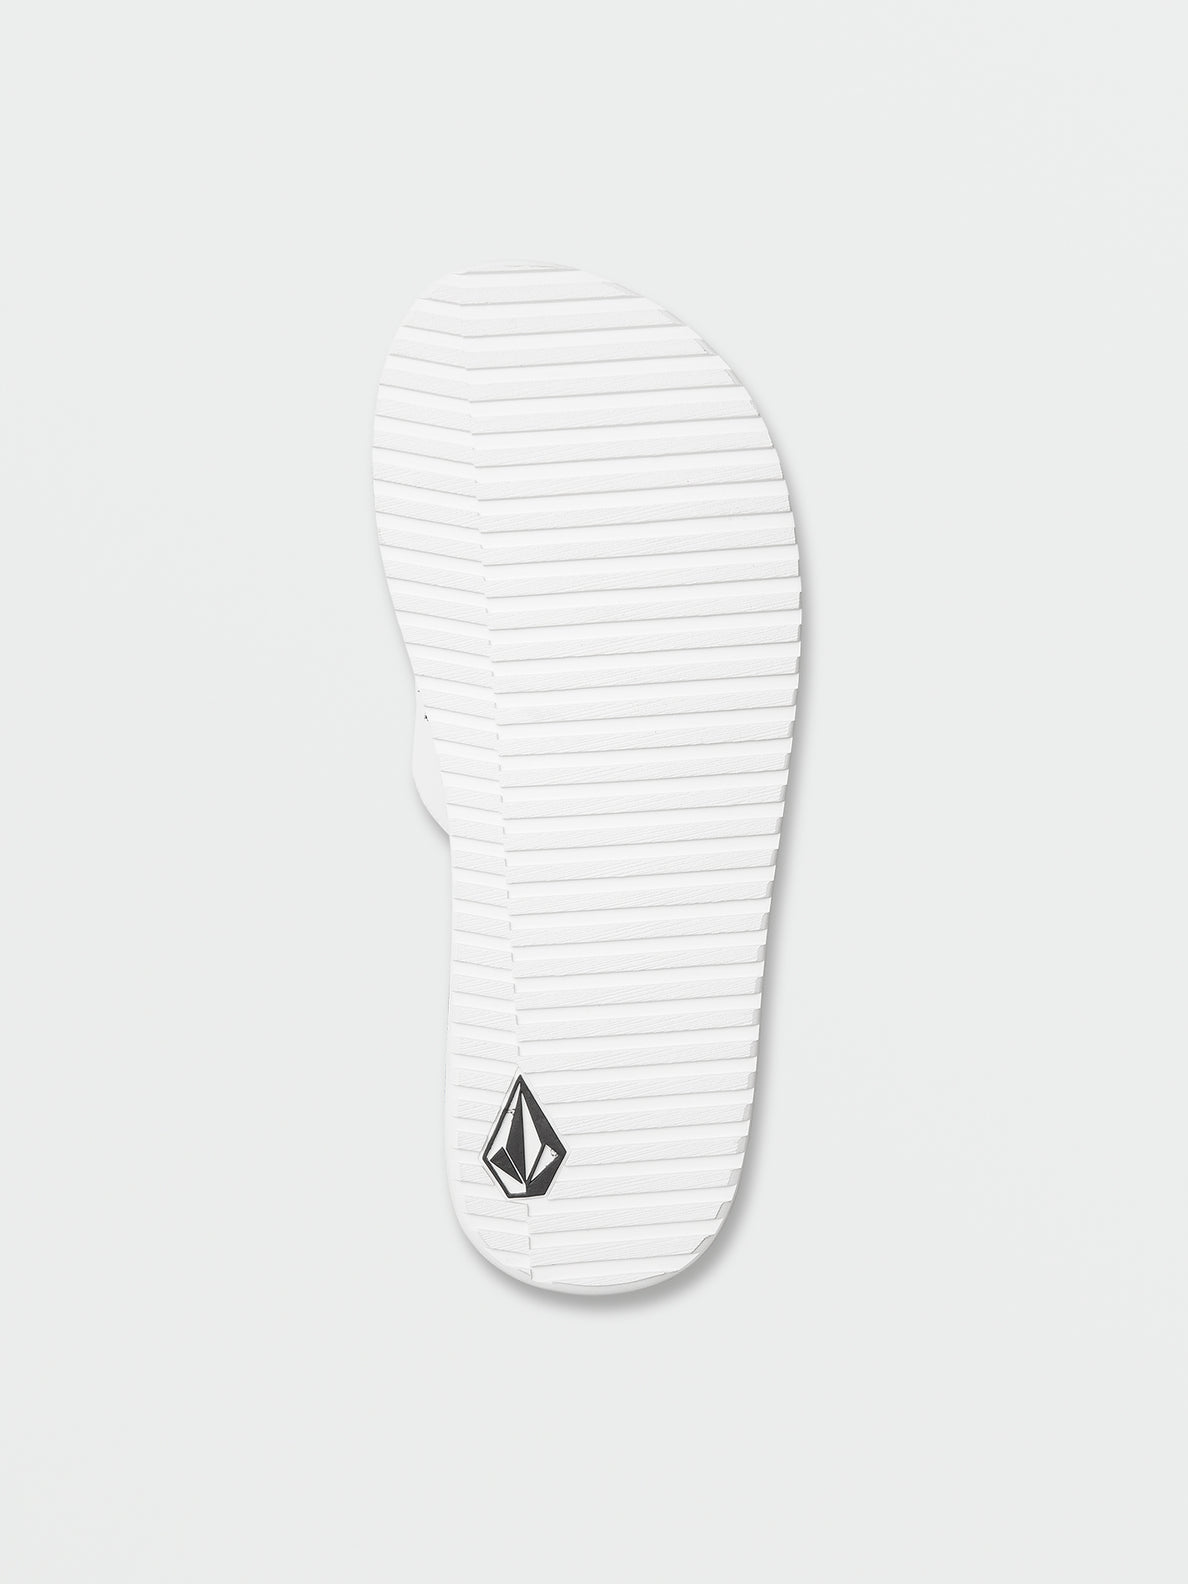 Recliner Slide Sandals - White